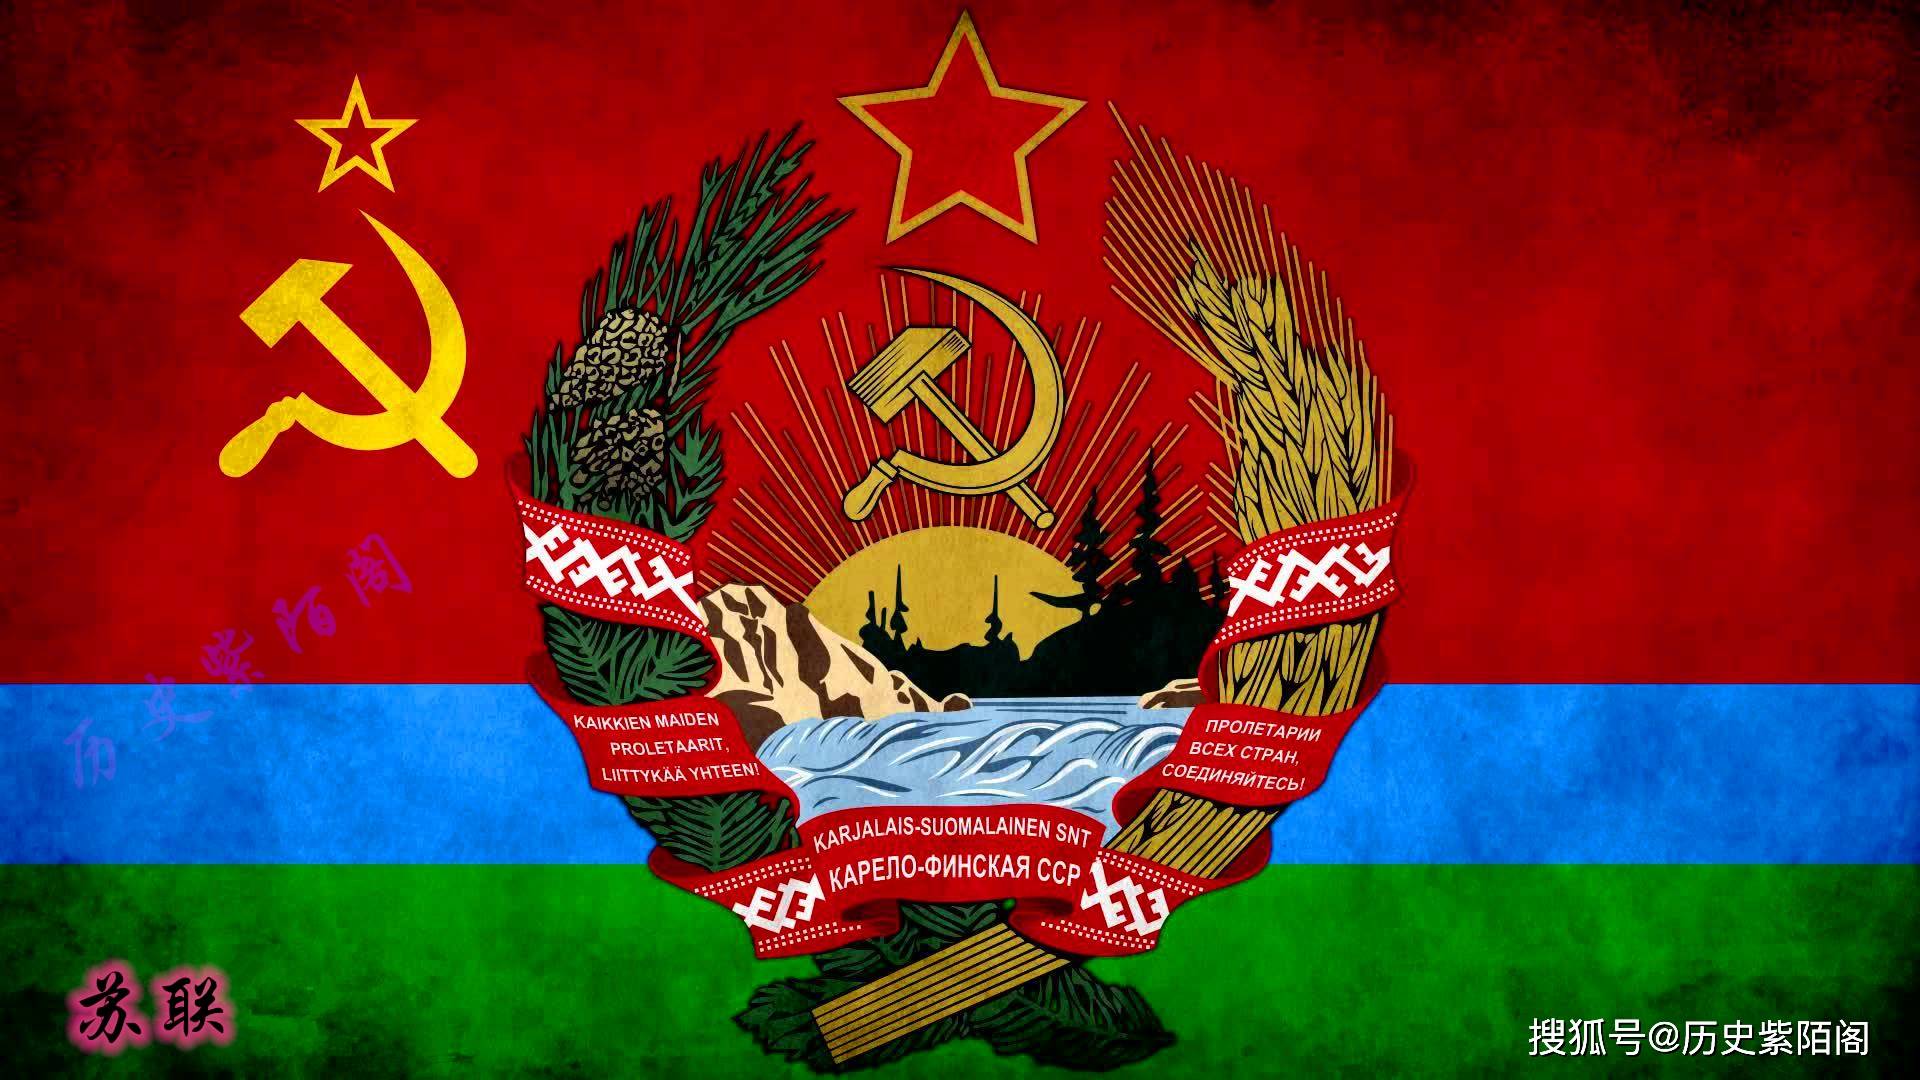 由苏联共产党执政,全称为苏维埃社会主义共和国联盟